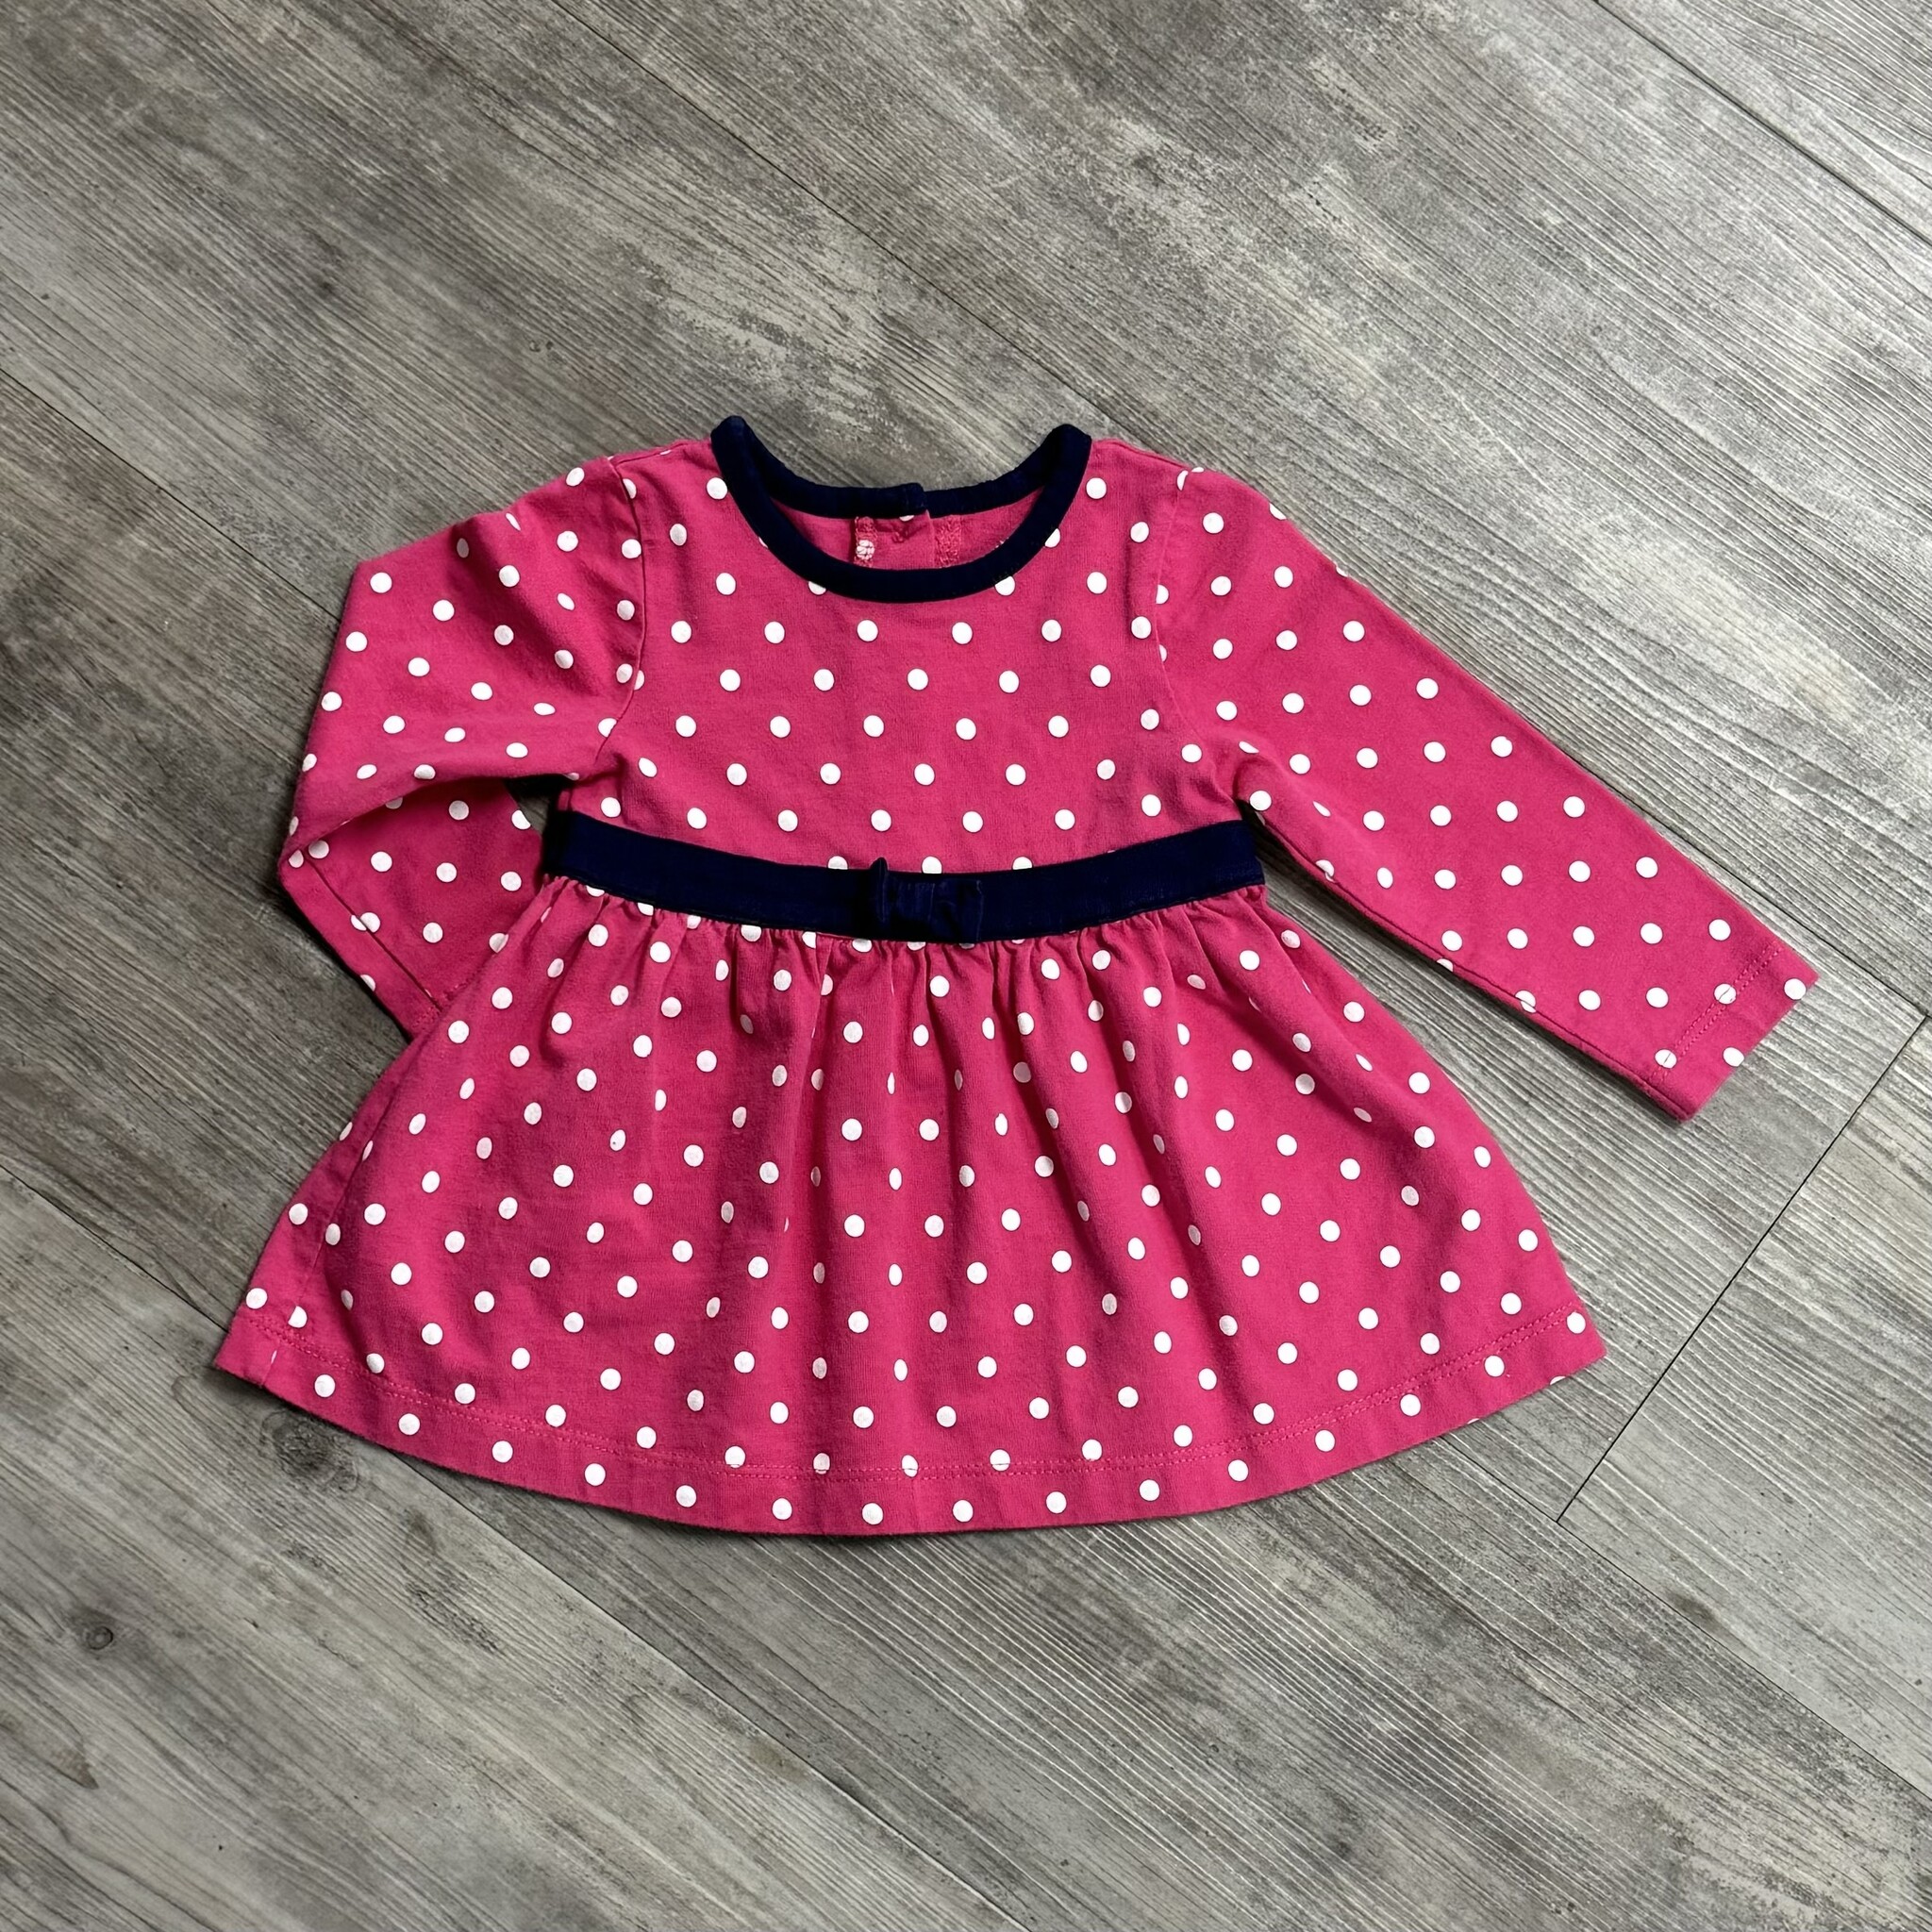 Pink Polka Dot Dress - Size 12M